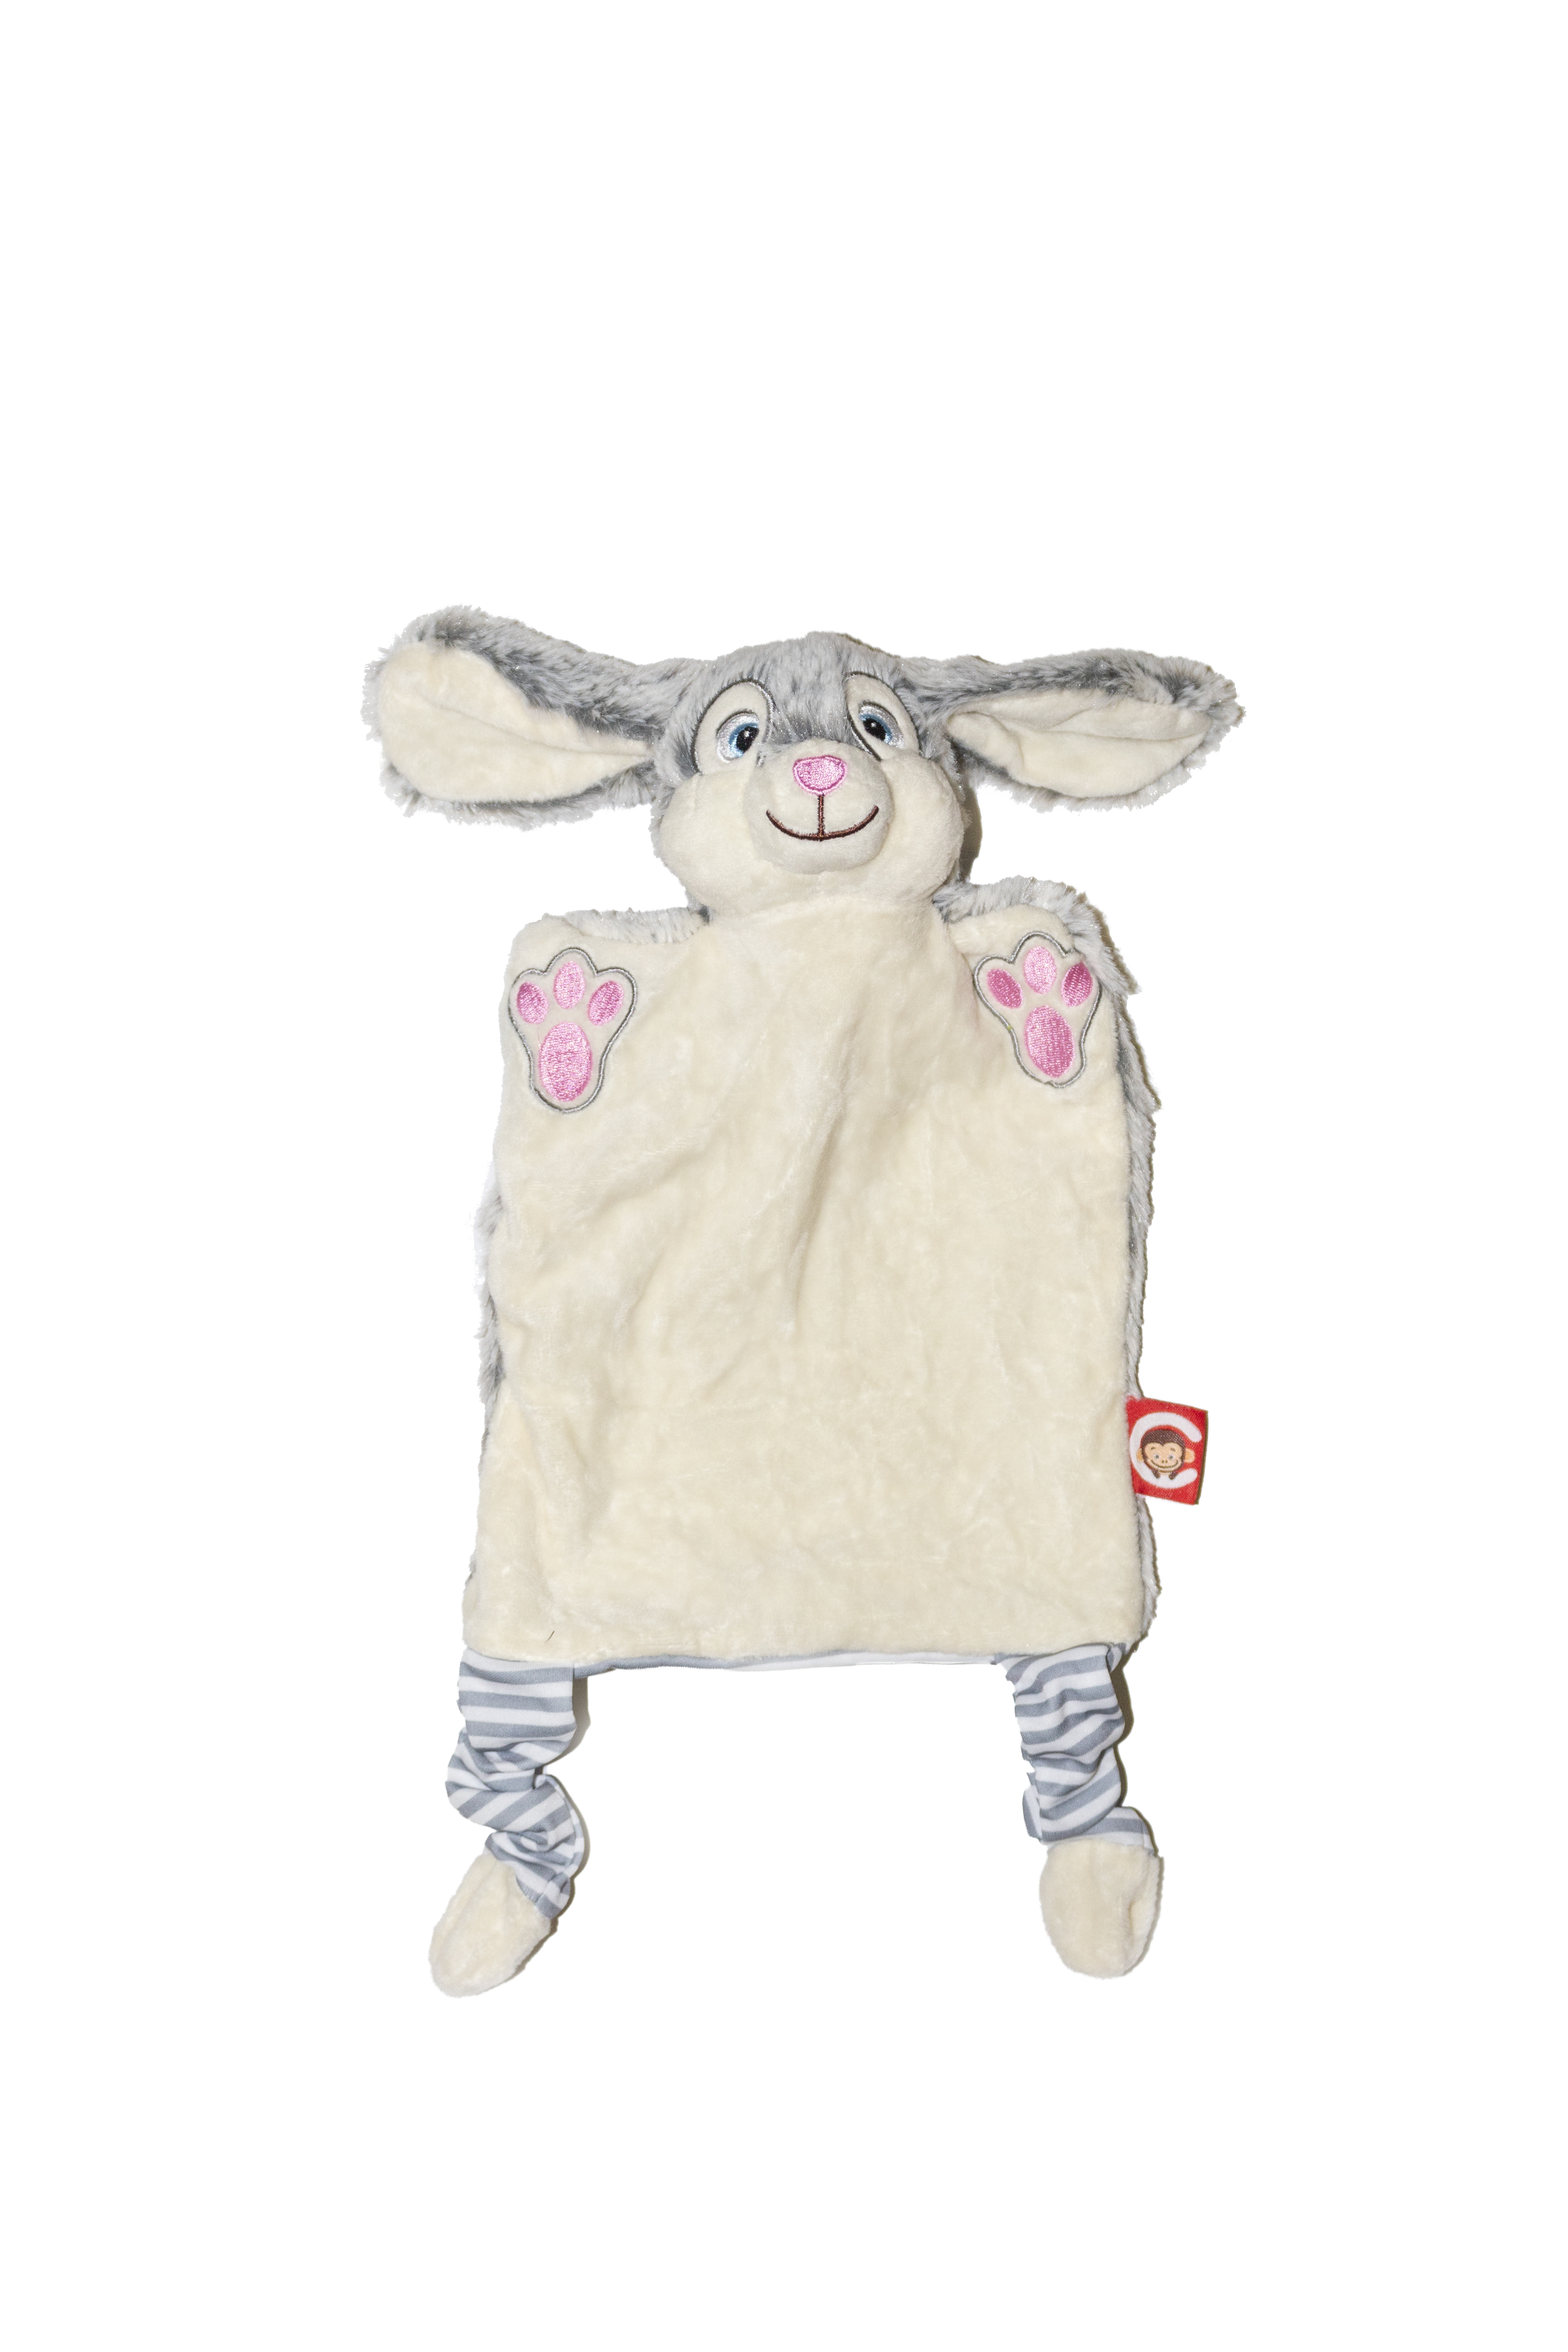 Kuscheltuch - Bunny Blanket - Dein Personalisierter Hase als Kuscheltuch